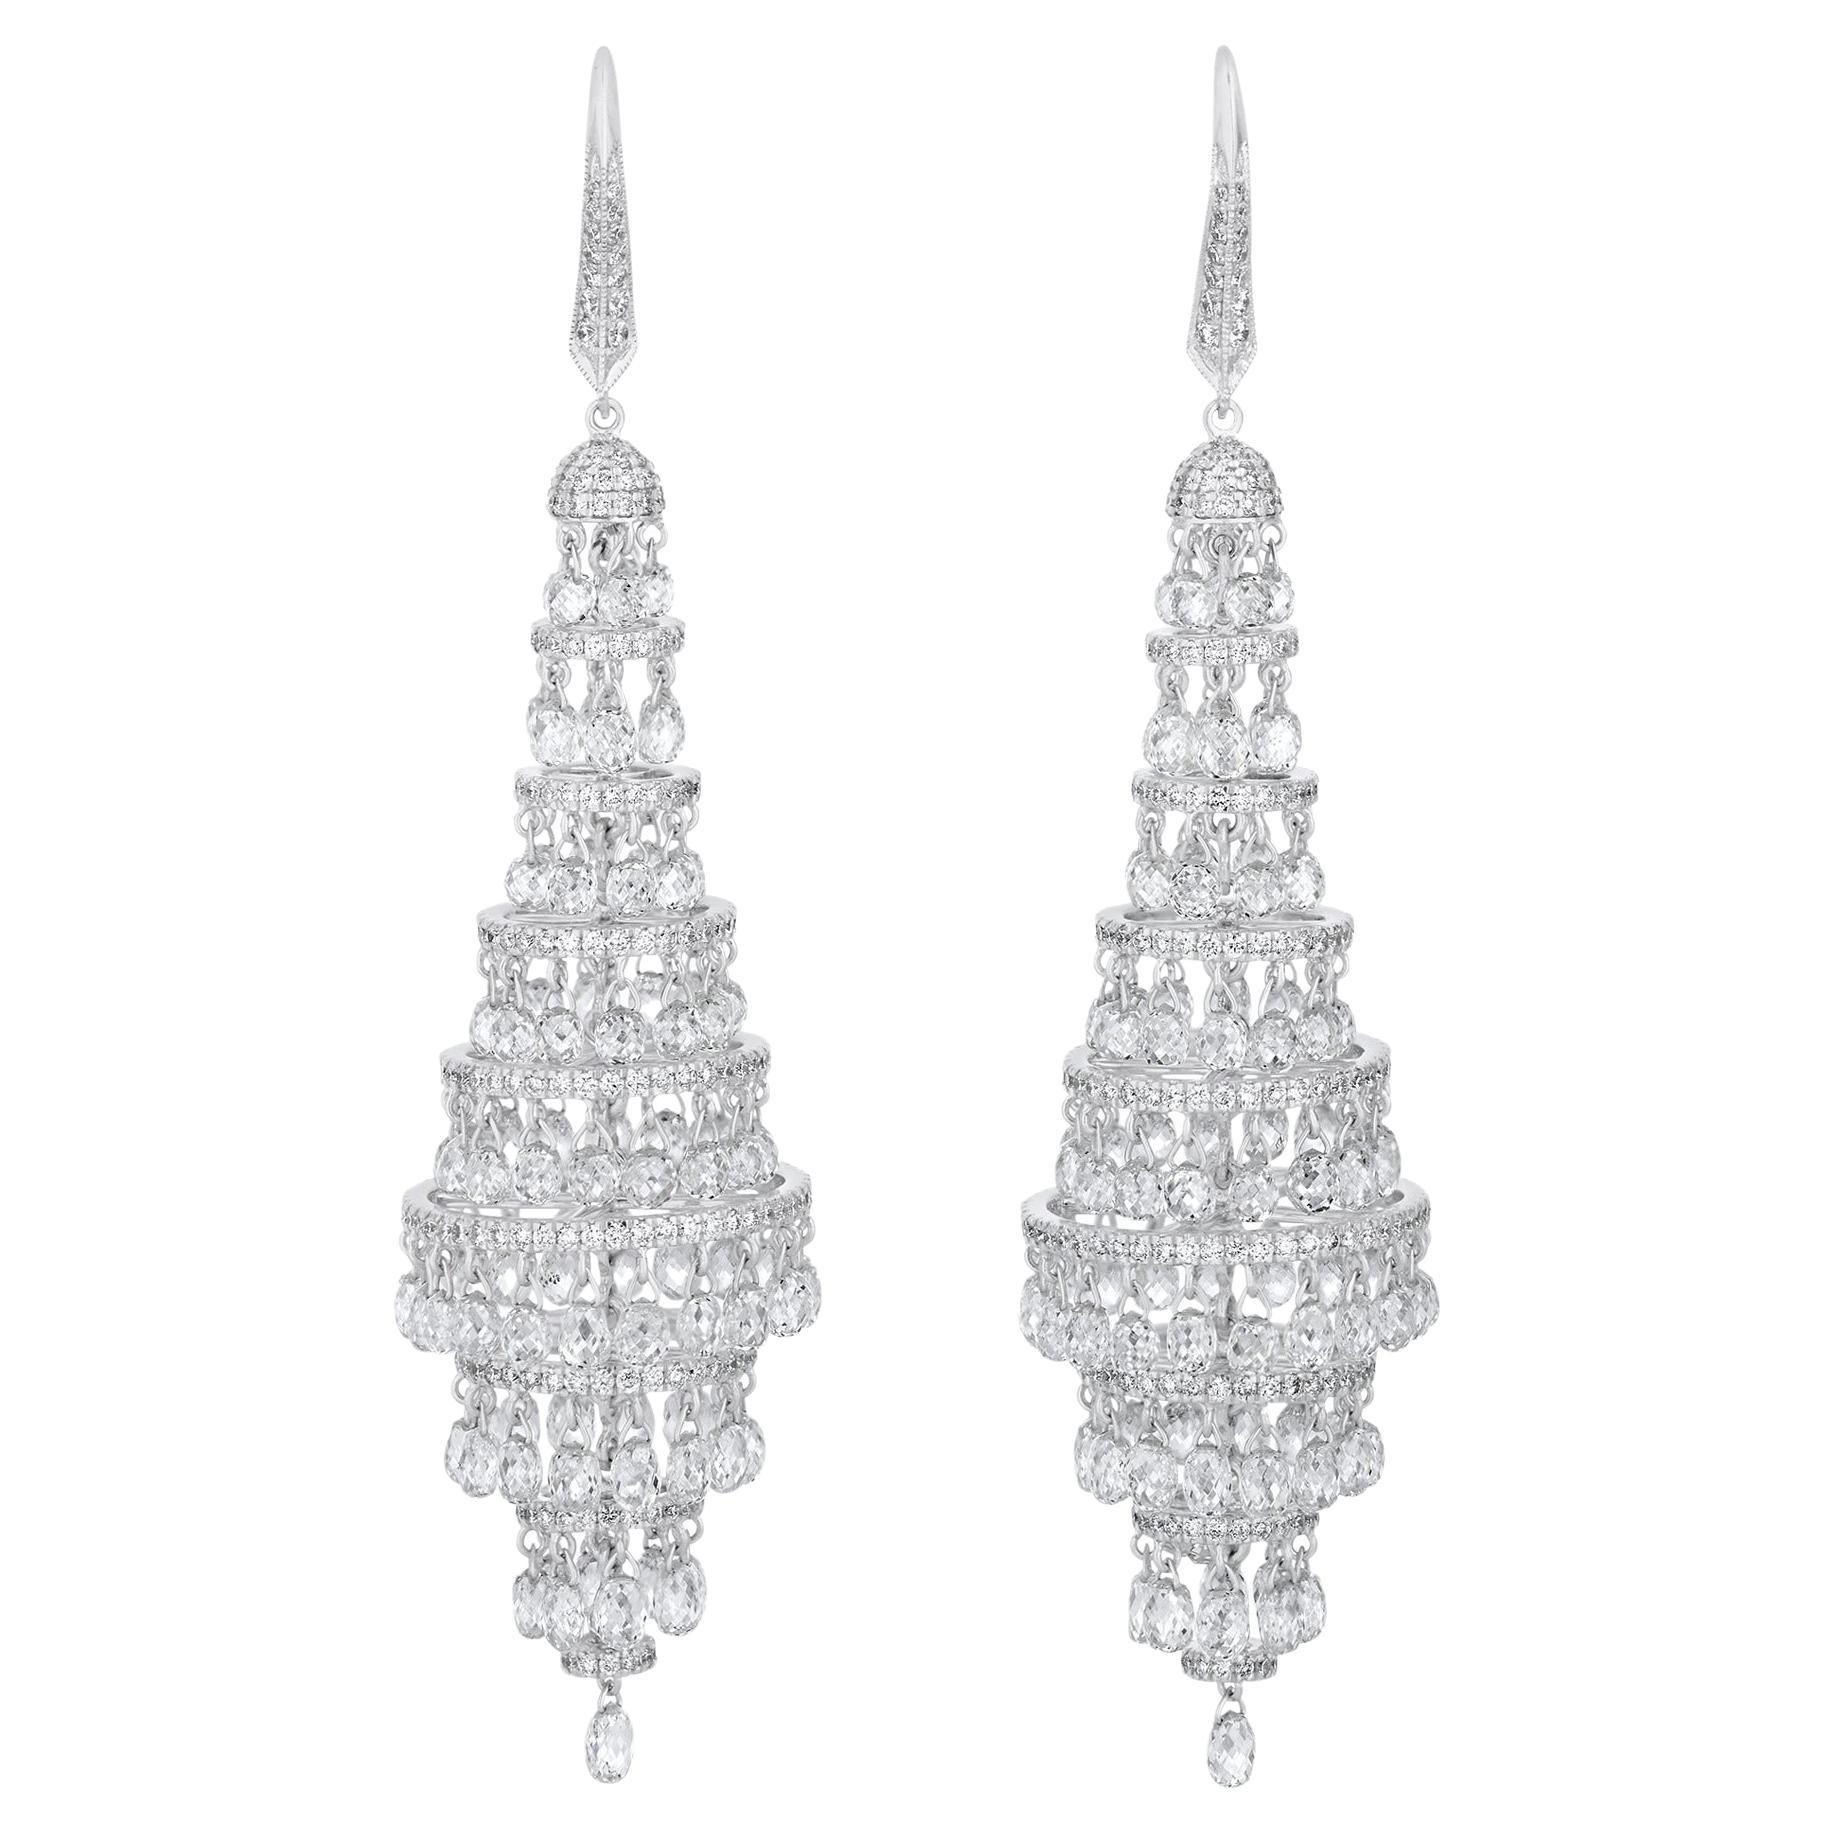 Diamond Chandelier Earrings, 25.72 Carats